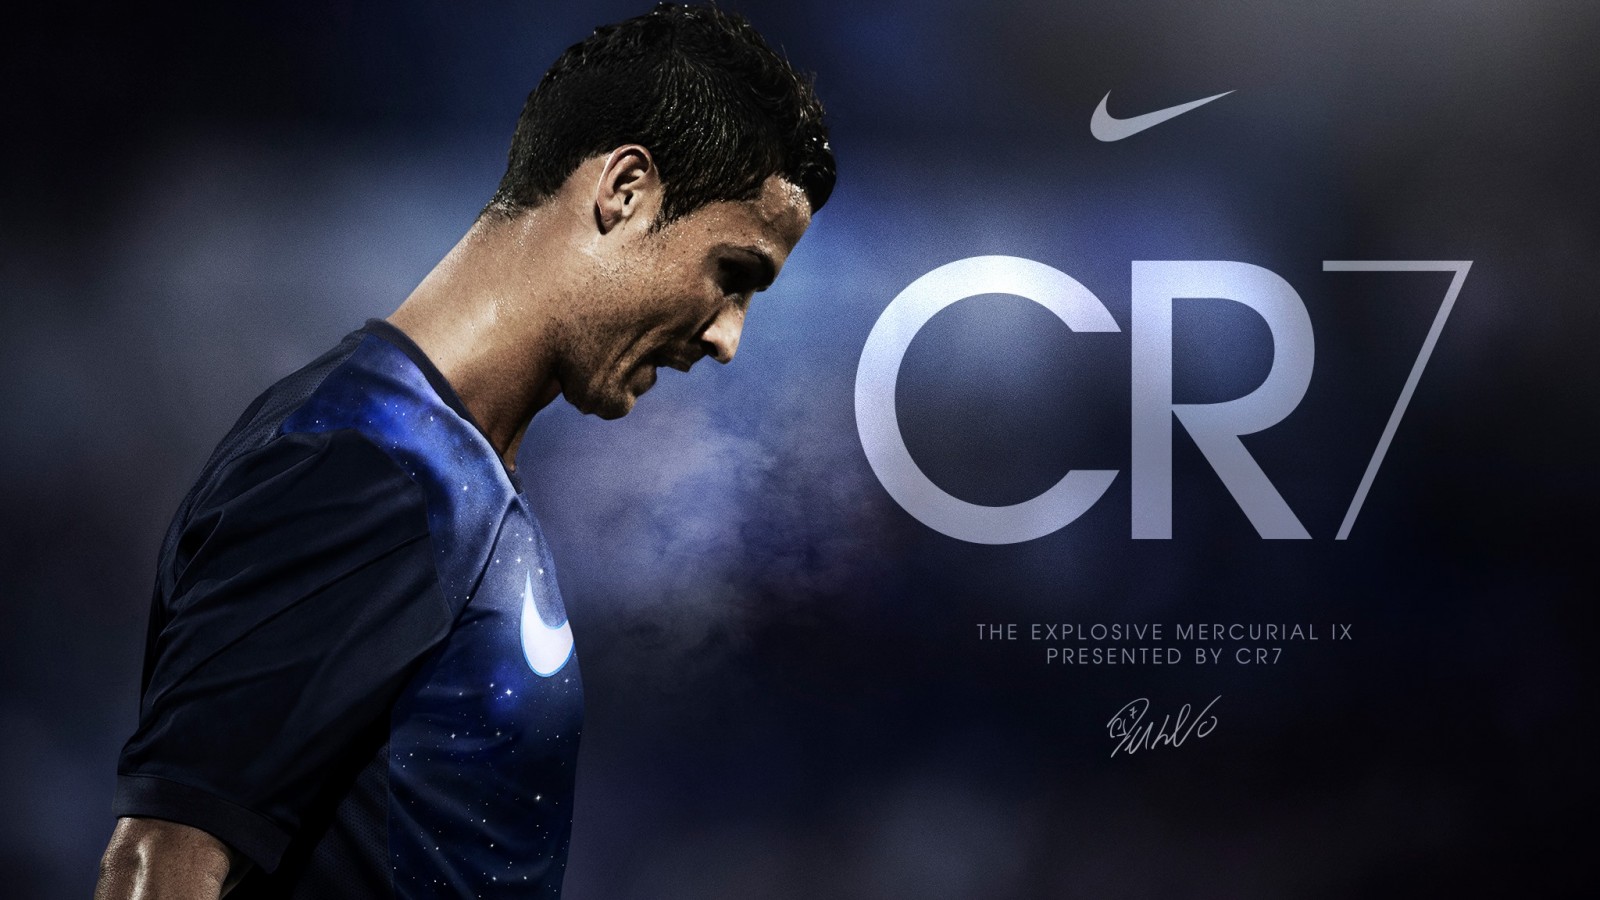 Cristiano Ronaldo Wallpaper 2014 #770 Wallpaper | idwallpics.com